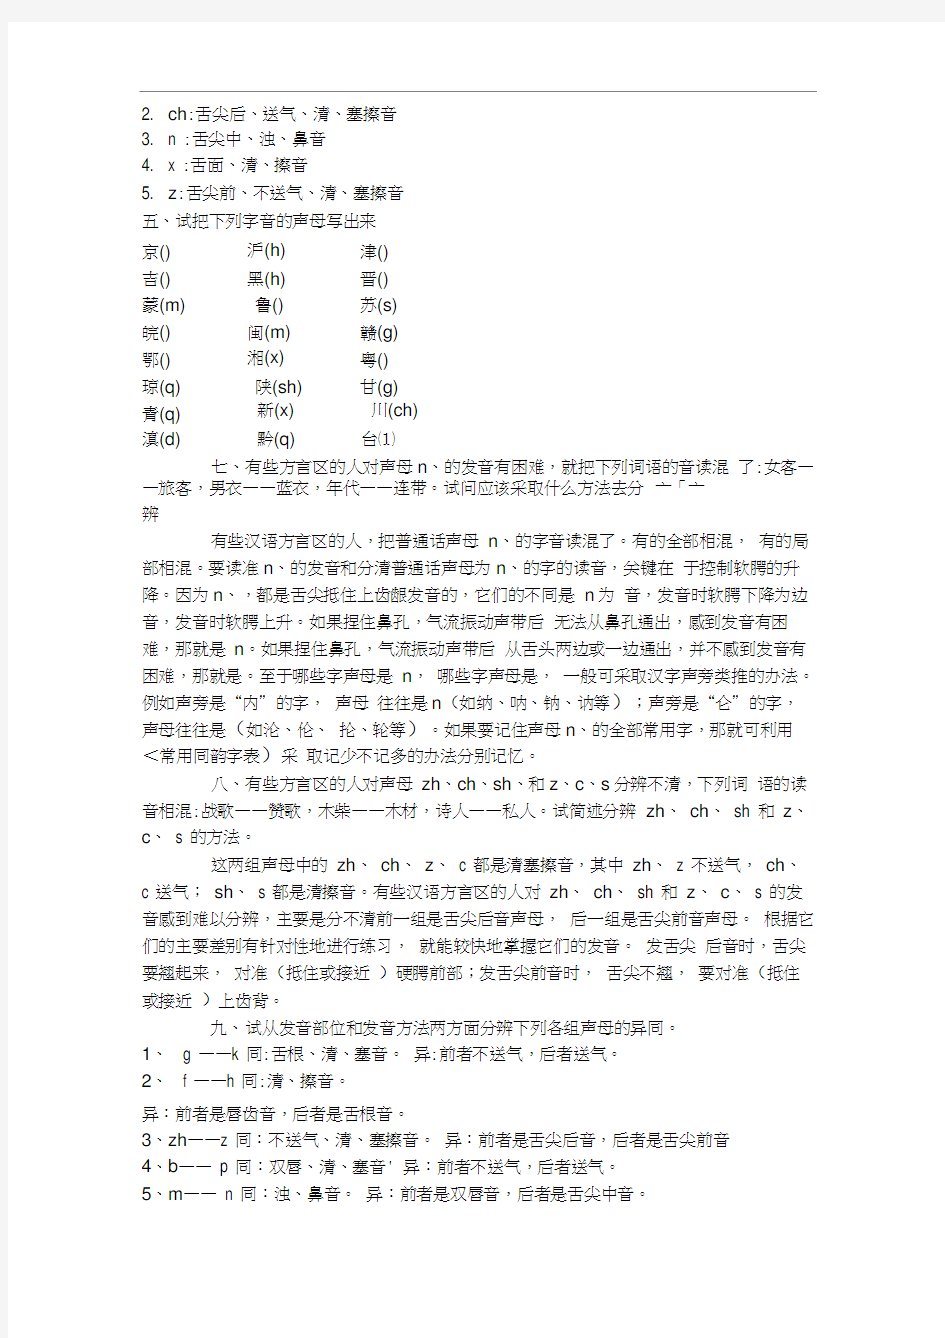 现代汉语黄廖版课后习题上下册完整版答案